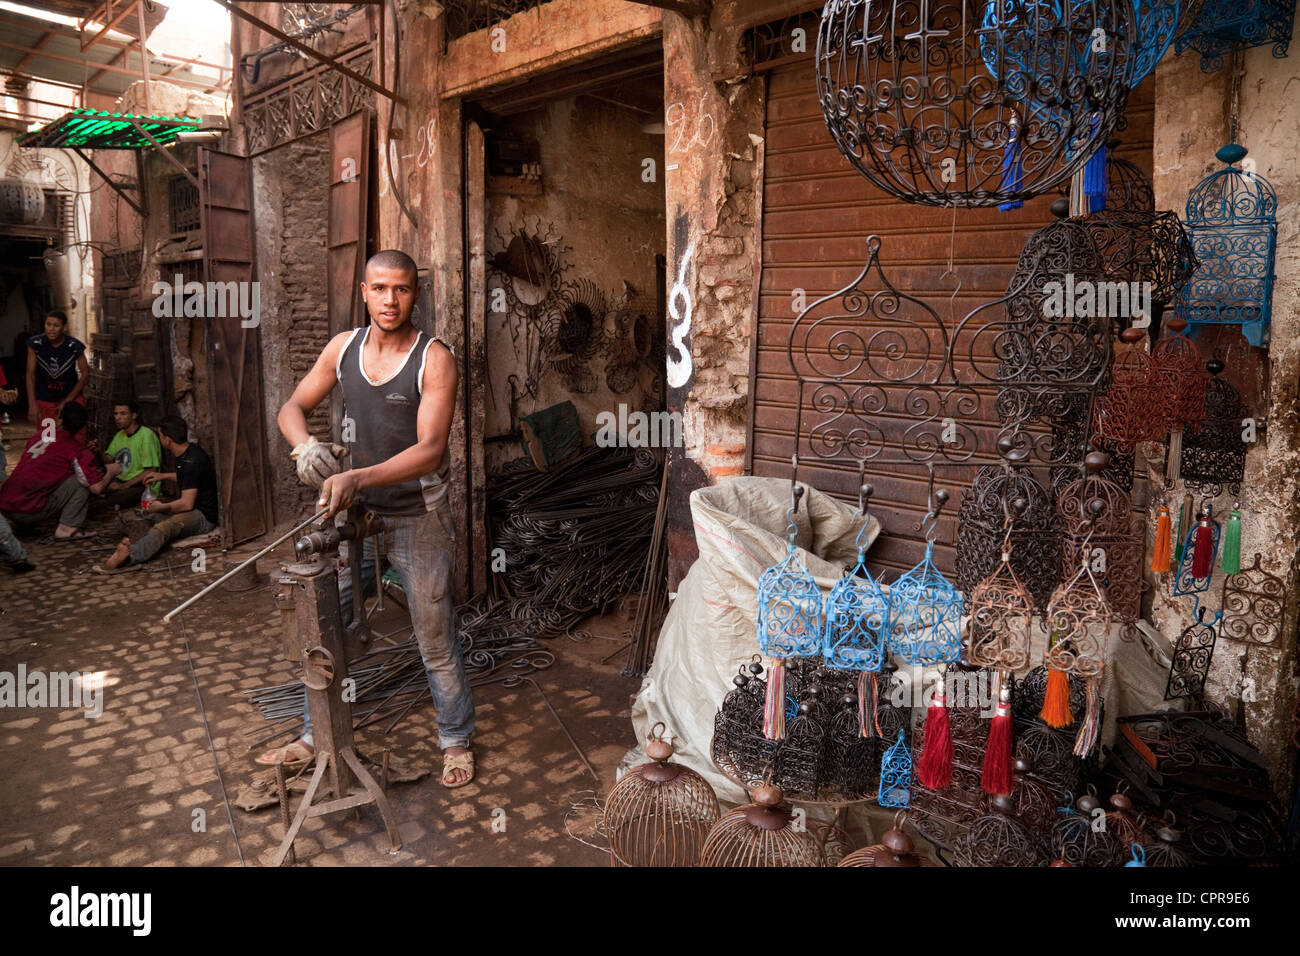 Marrakech - artigianato del ferro battuto artigiano lavora nel Souk della  Medina di Marrakech, Marocco, Africa Foto stock - Alamy